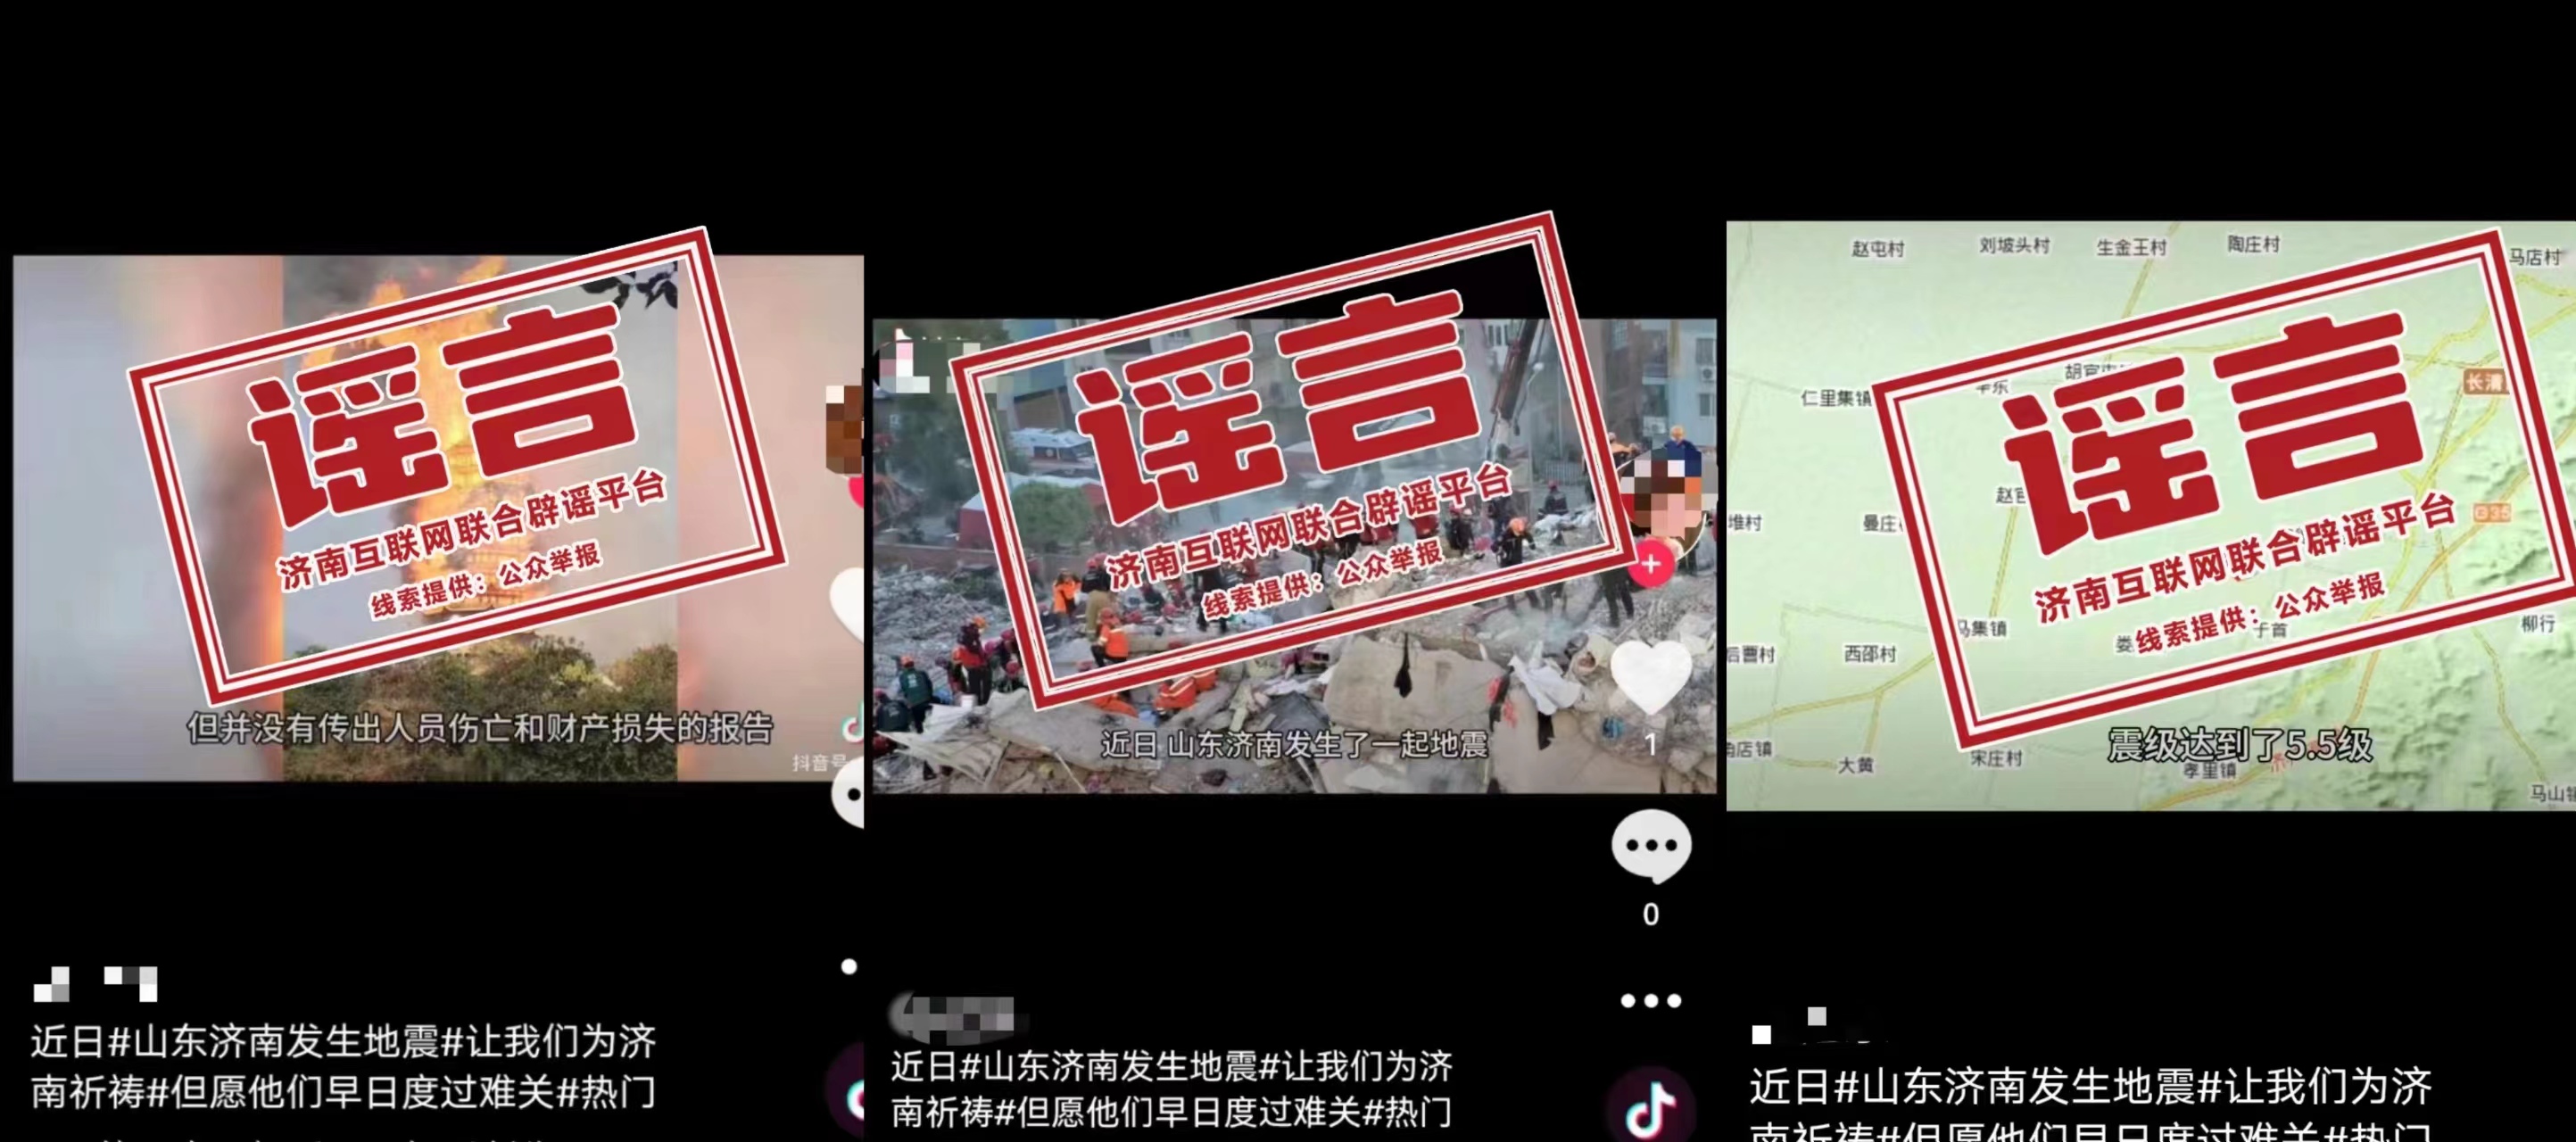 发布谣言的社交平台账号内容 图源：中国互联网联合辟谣平台